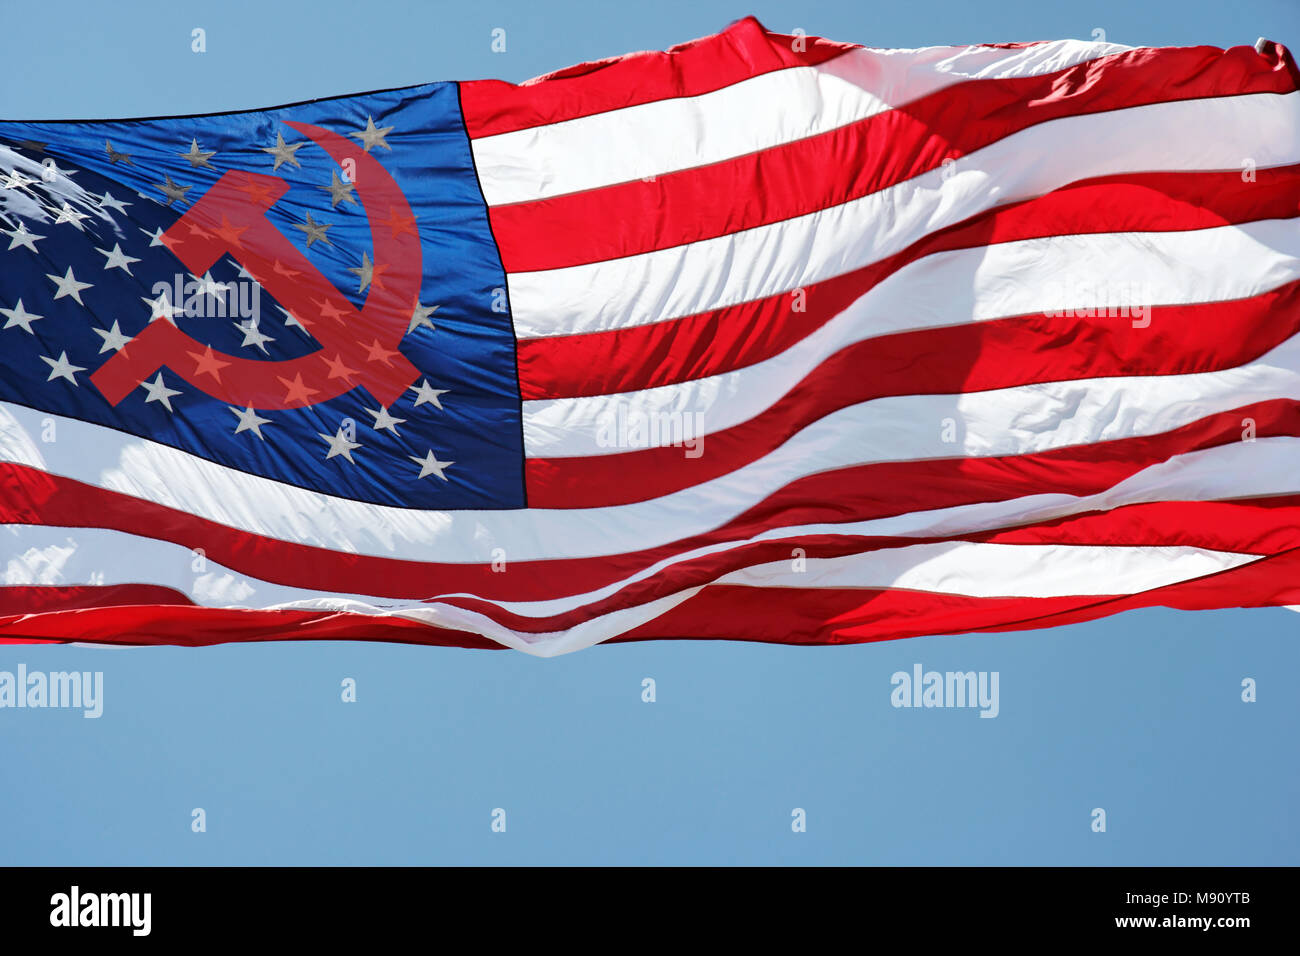 Russo simbolico falce e martello sovrapposta a Stati Uniti a stelle e strisce bandiera. International sconvolgimenti politici, il caos e l'intrigo. Foto Stock